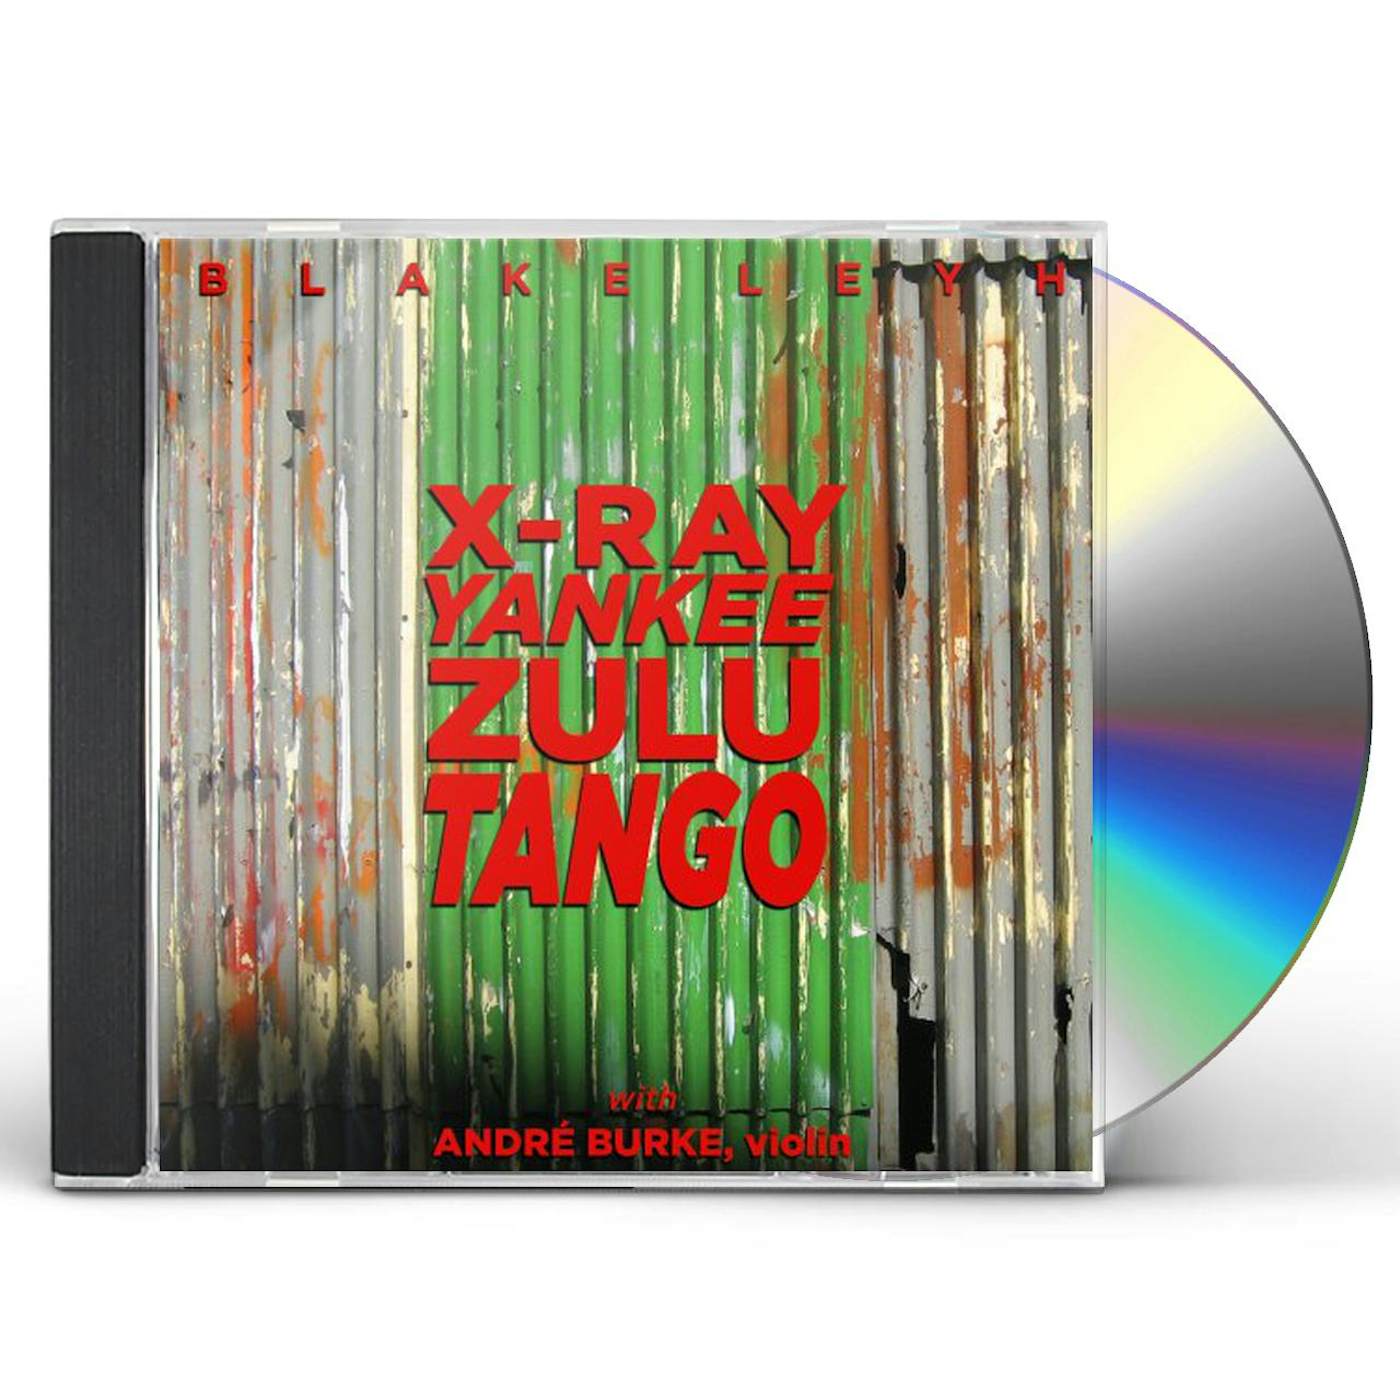 Blake Leyh X-RAY YANKEE ZULU TANGO CD